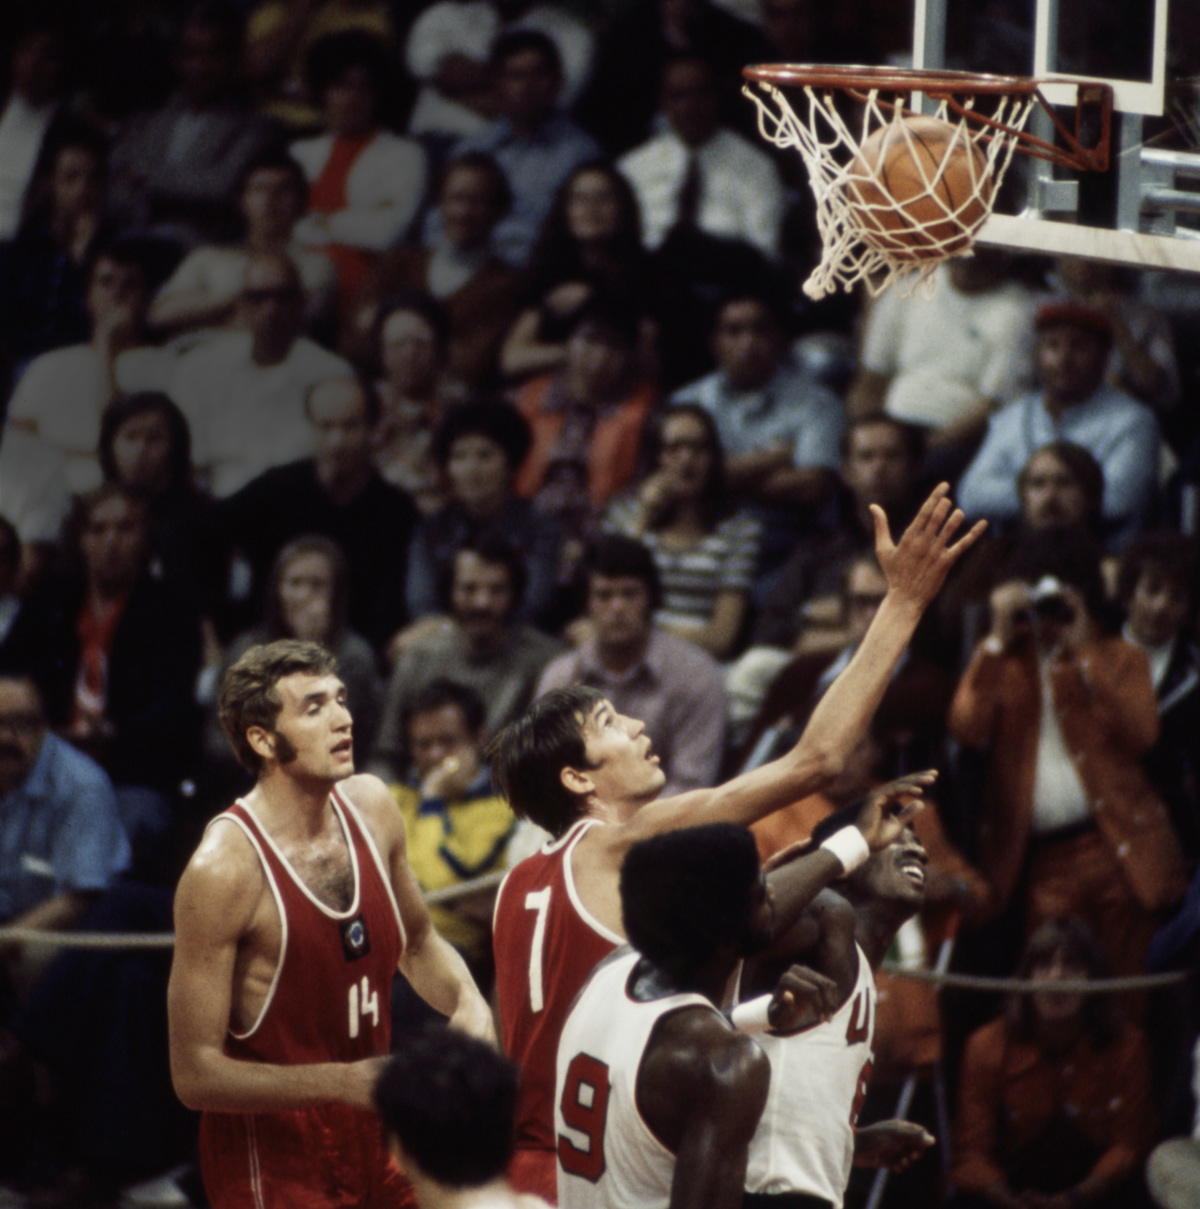 Игры 1972 баскетбол. Мюнхен 1972 (СССР - США). Сборная США по баскетболу 1972. Сборная СССР по баскетболу 1972.